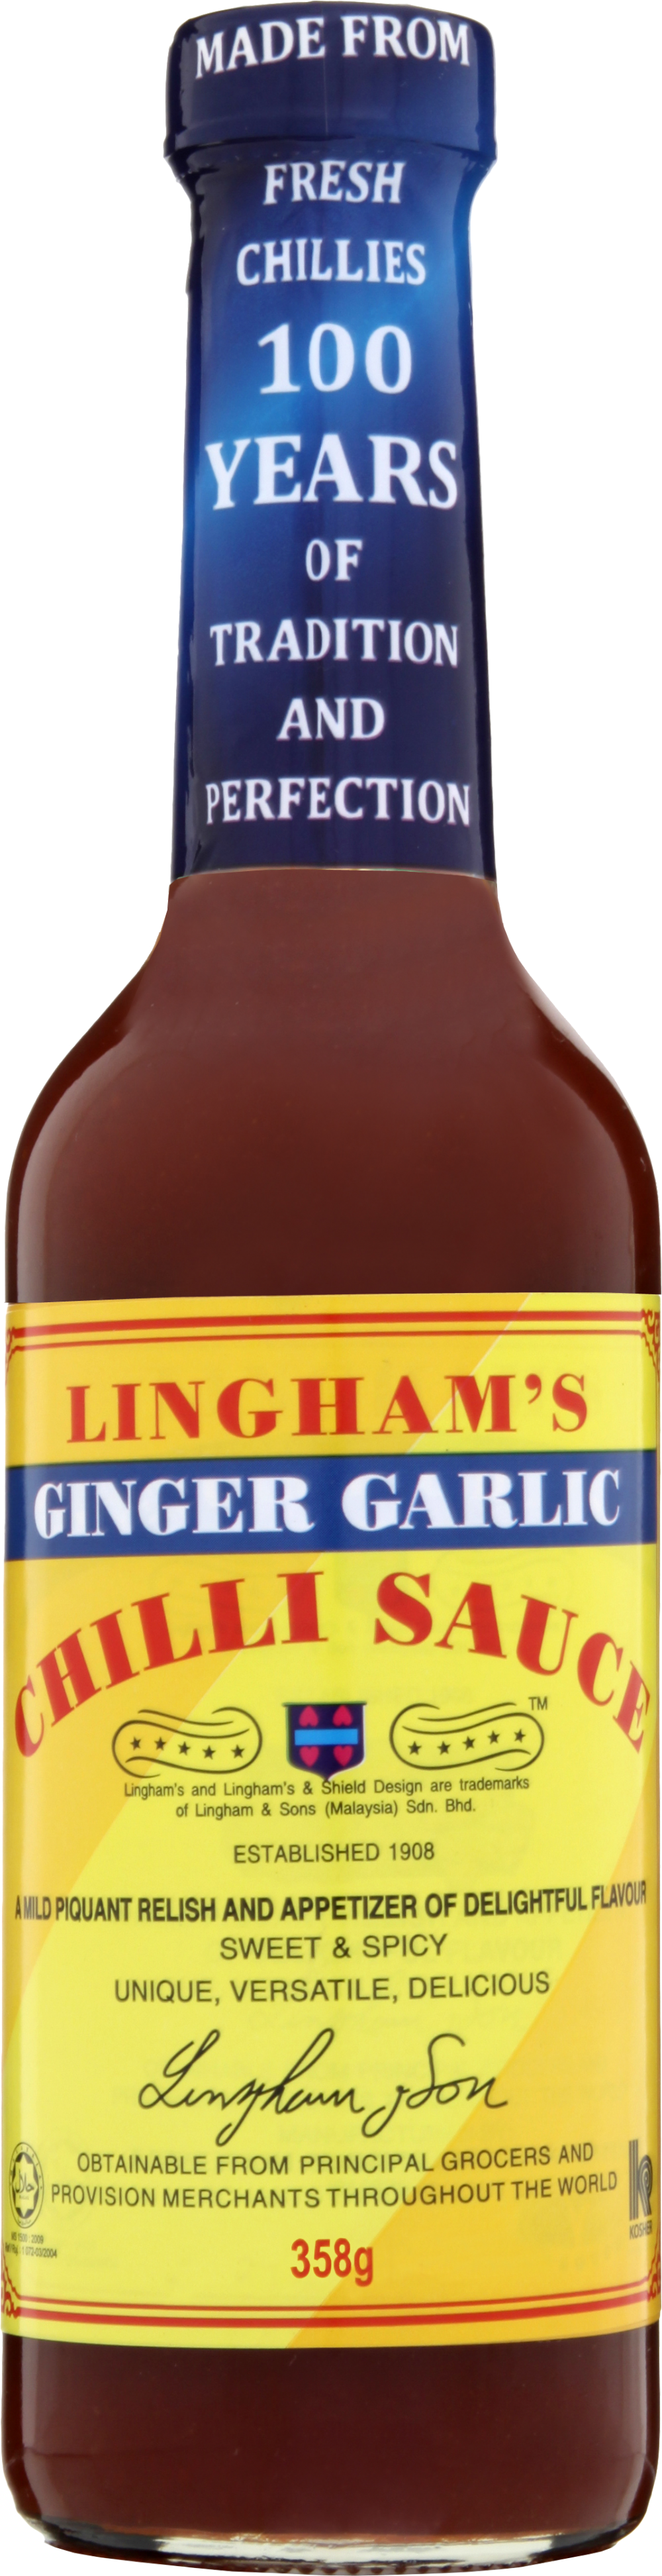 LINGHAMS Ginger Garlic Chilli Sauce 358g